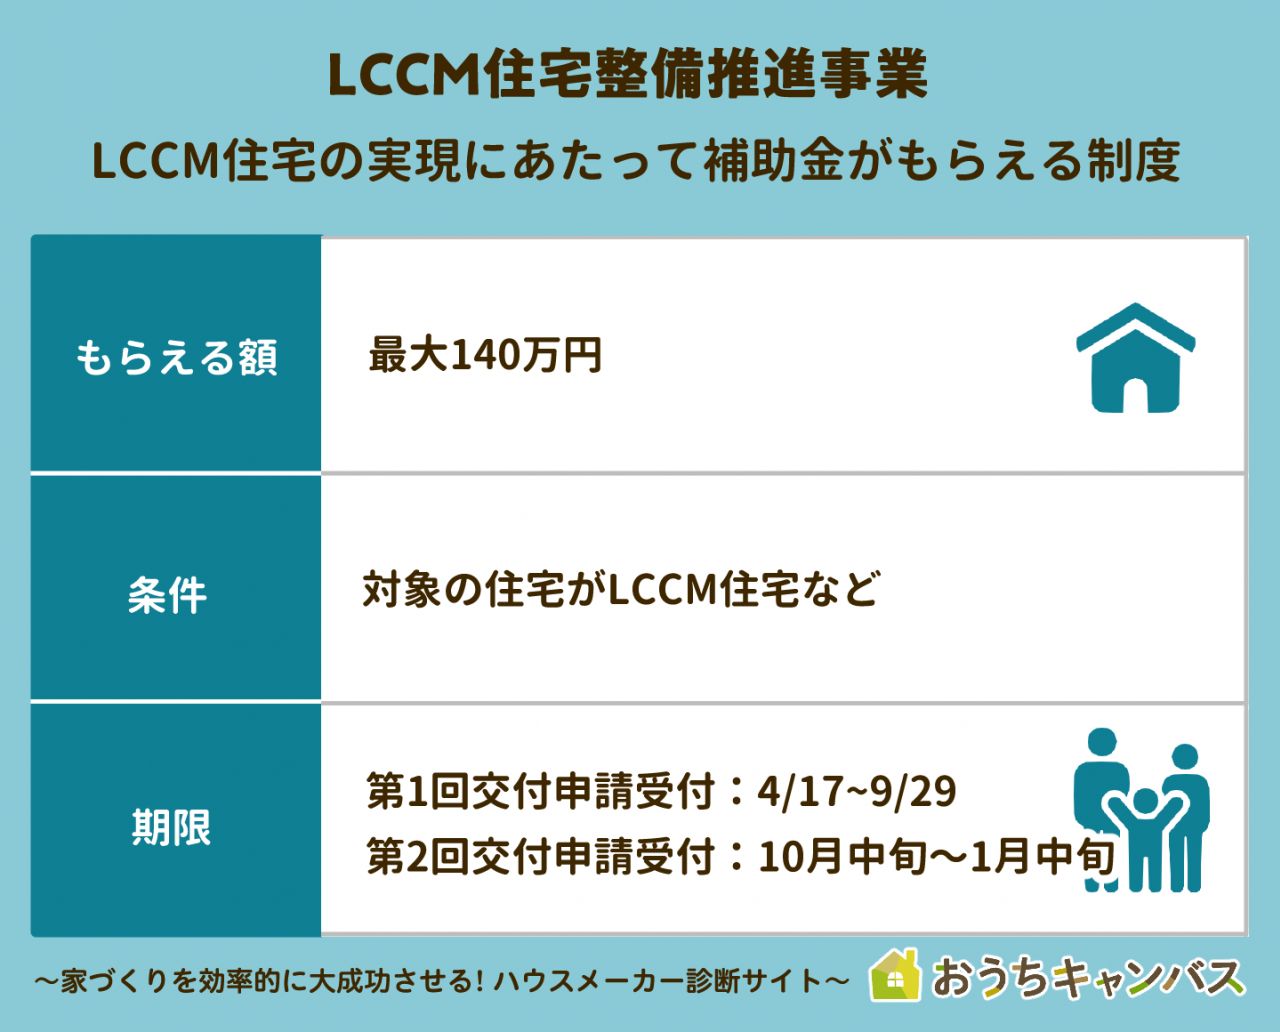 LCCM住宅整備推進事業の概要